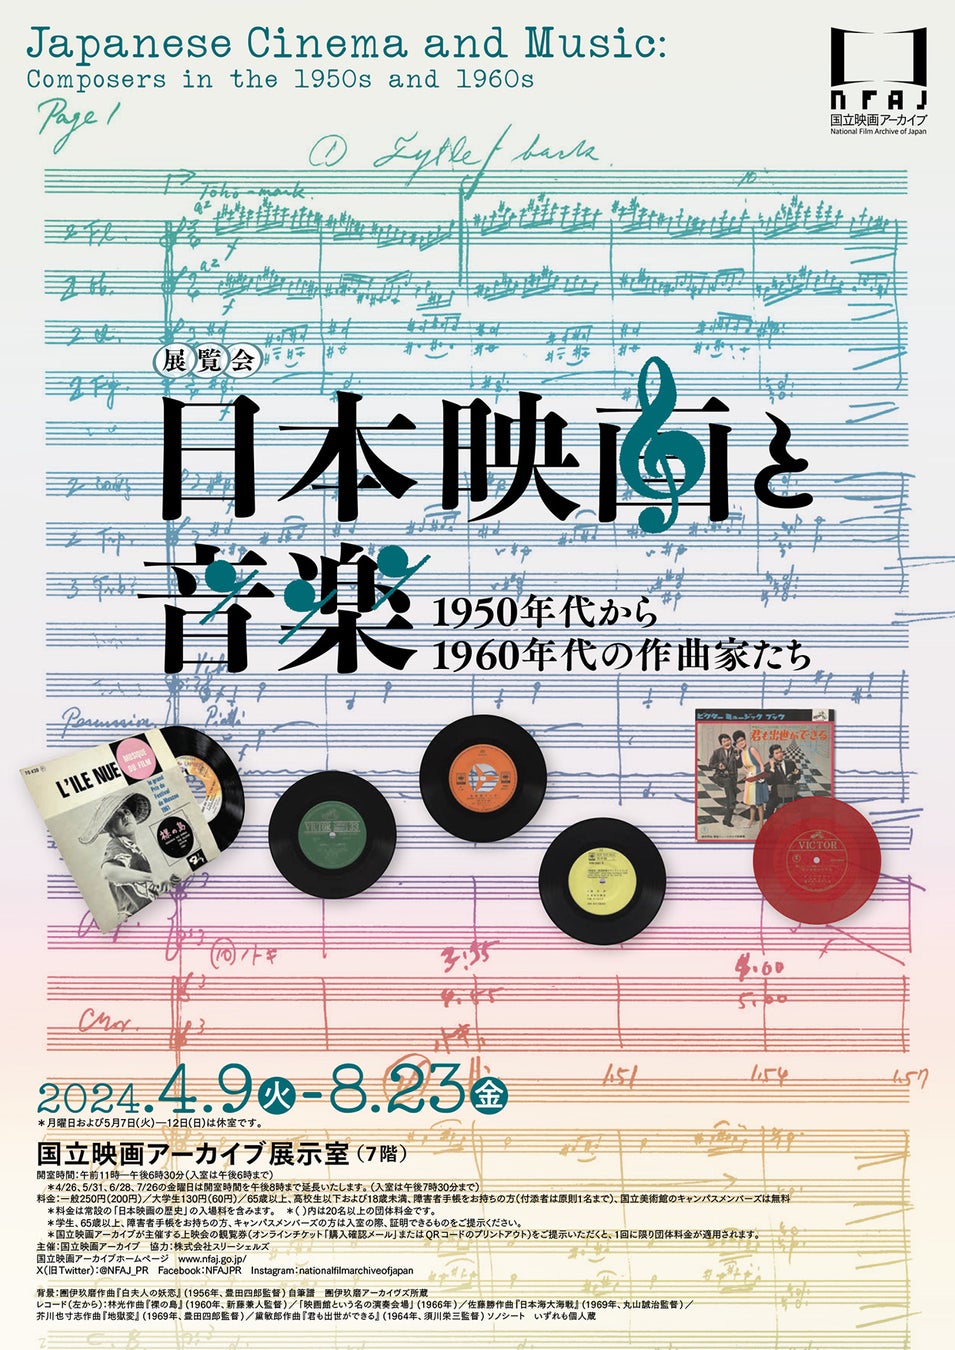 【国立映画アーカイブ】展覧会「日本映画と音楽 1950年代から1960年代の作曲家たち」開催のお知らせ